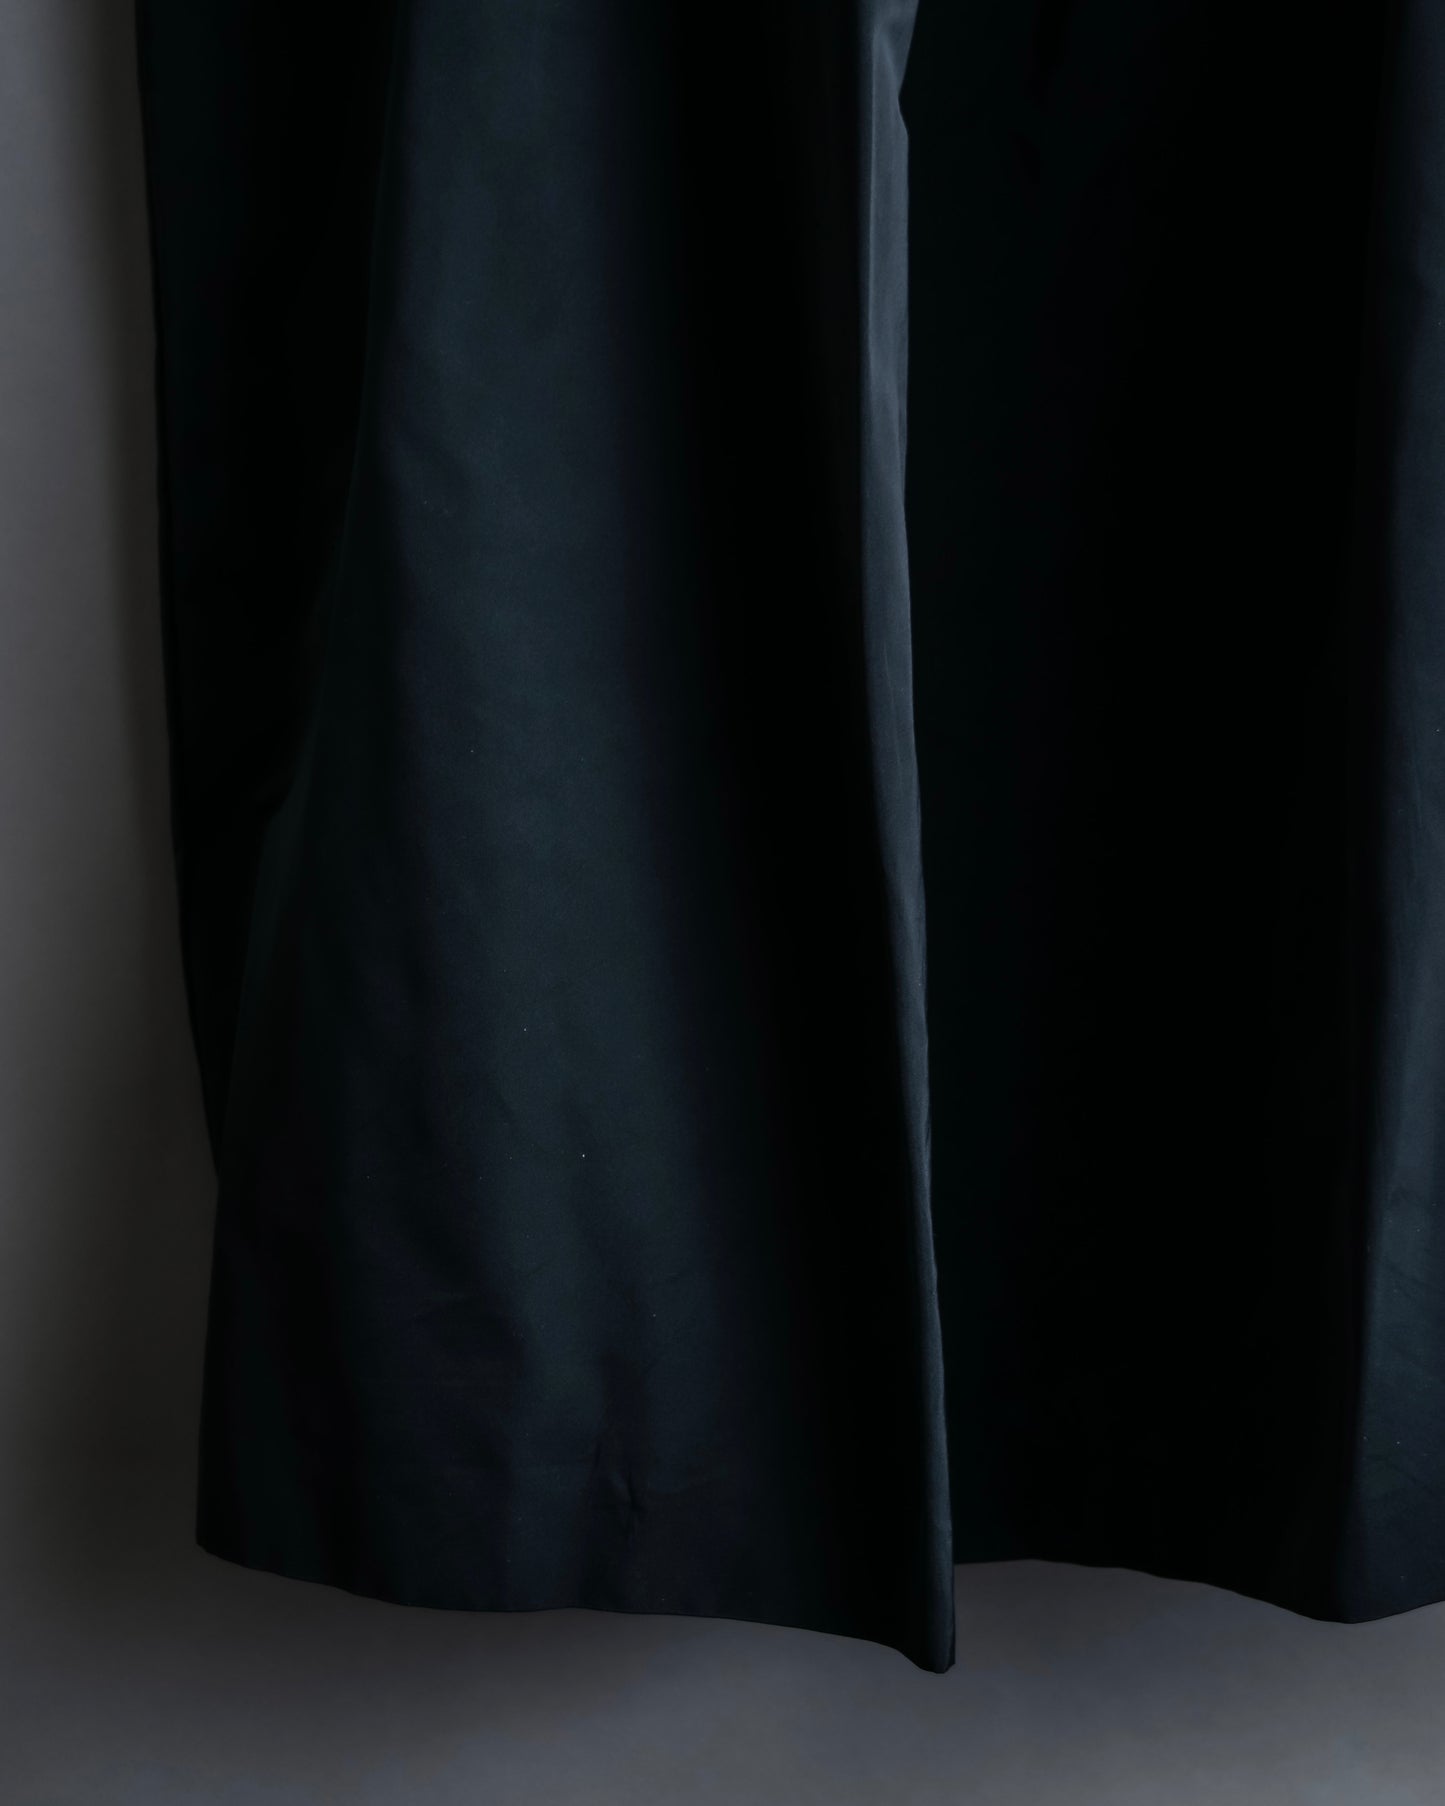 “JIL SANDER” Silk blended tight silhouette skirt